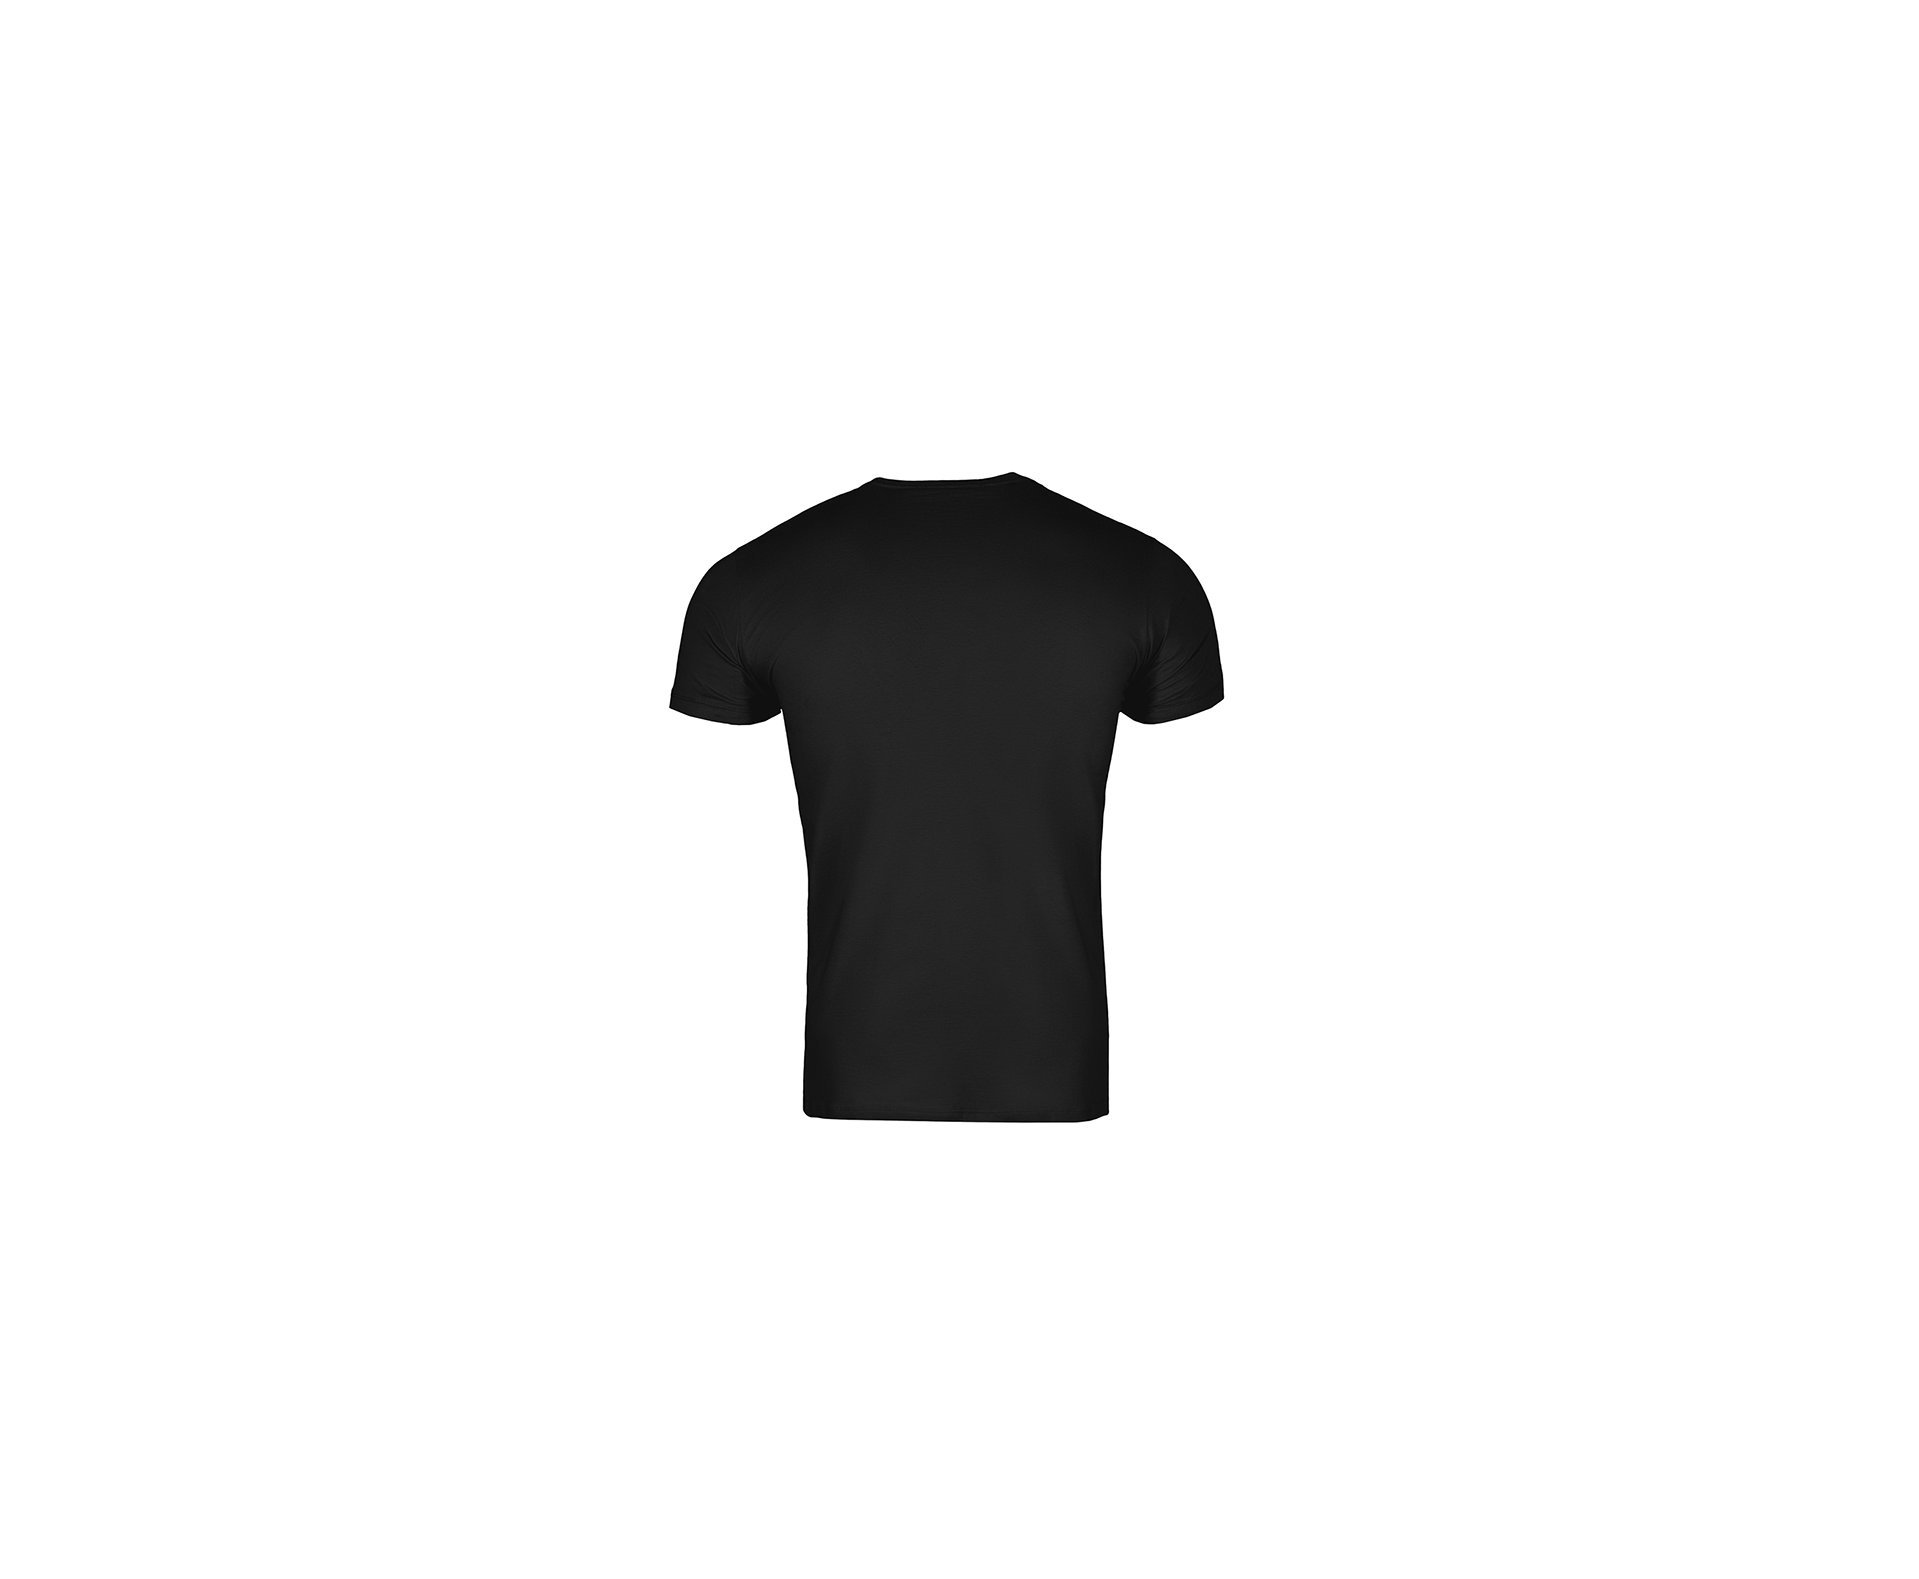 Camiseta T-shirt Invictus Concept Soldier Ii - P